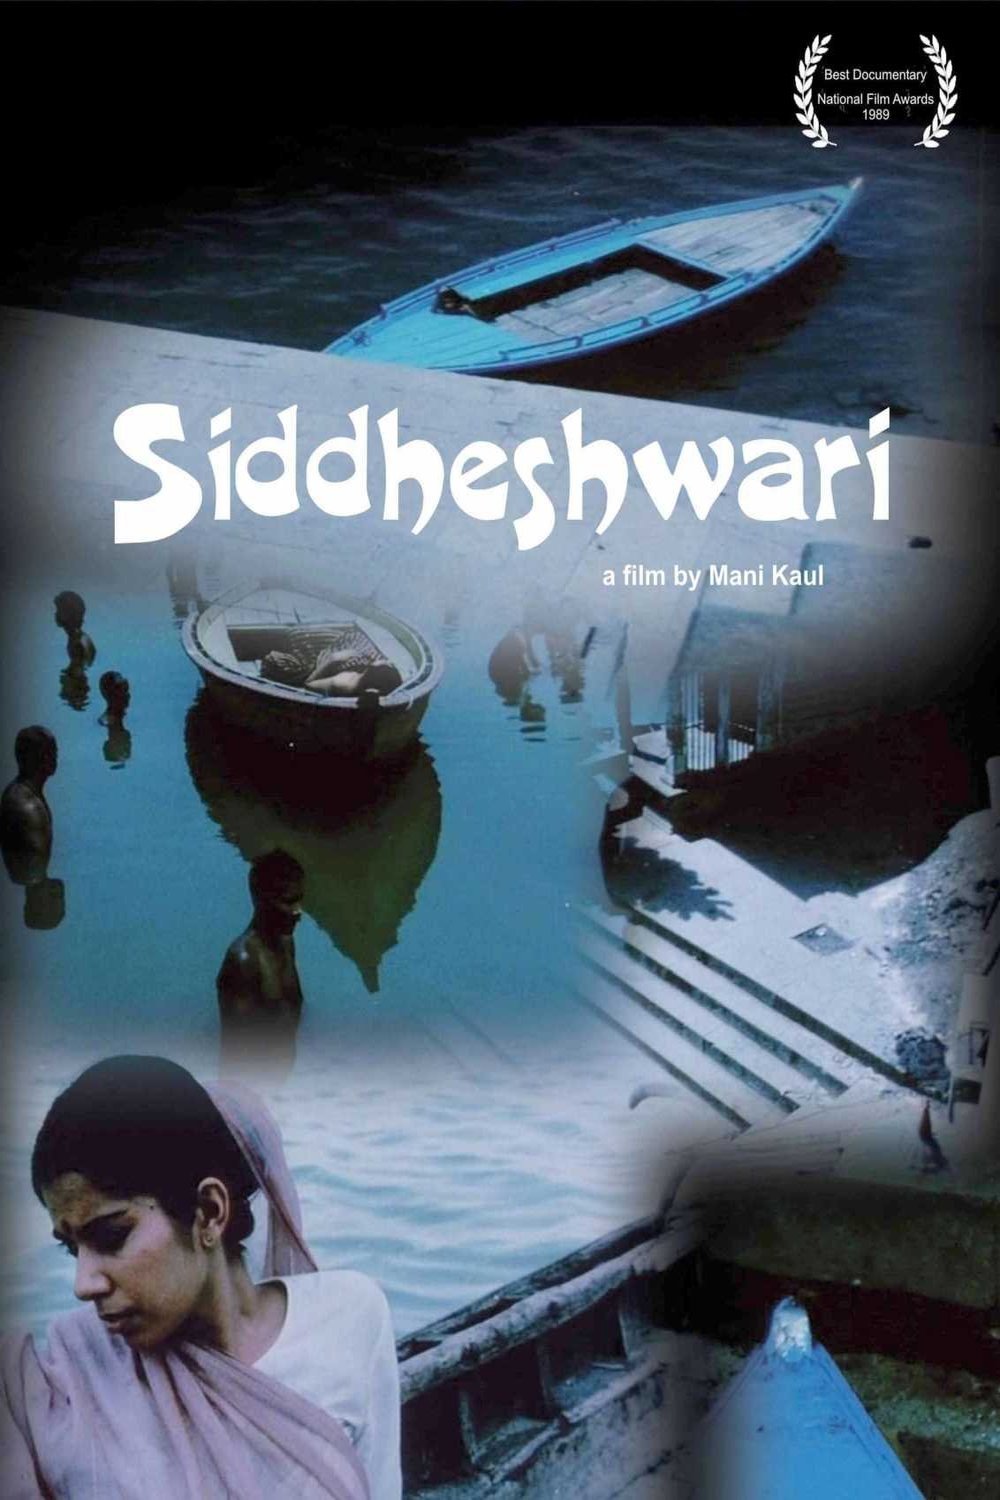 Hindi poster of the movie Siddeshwari